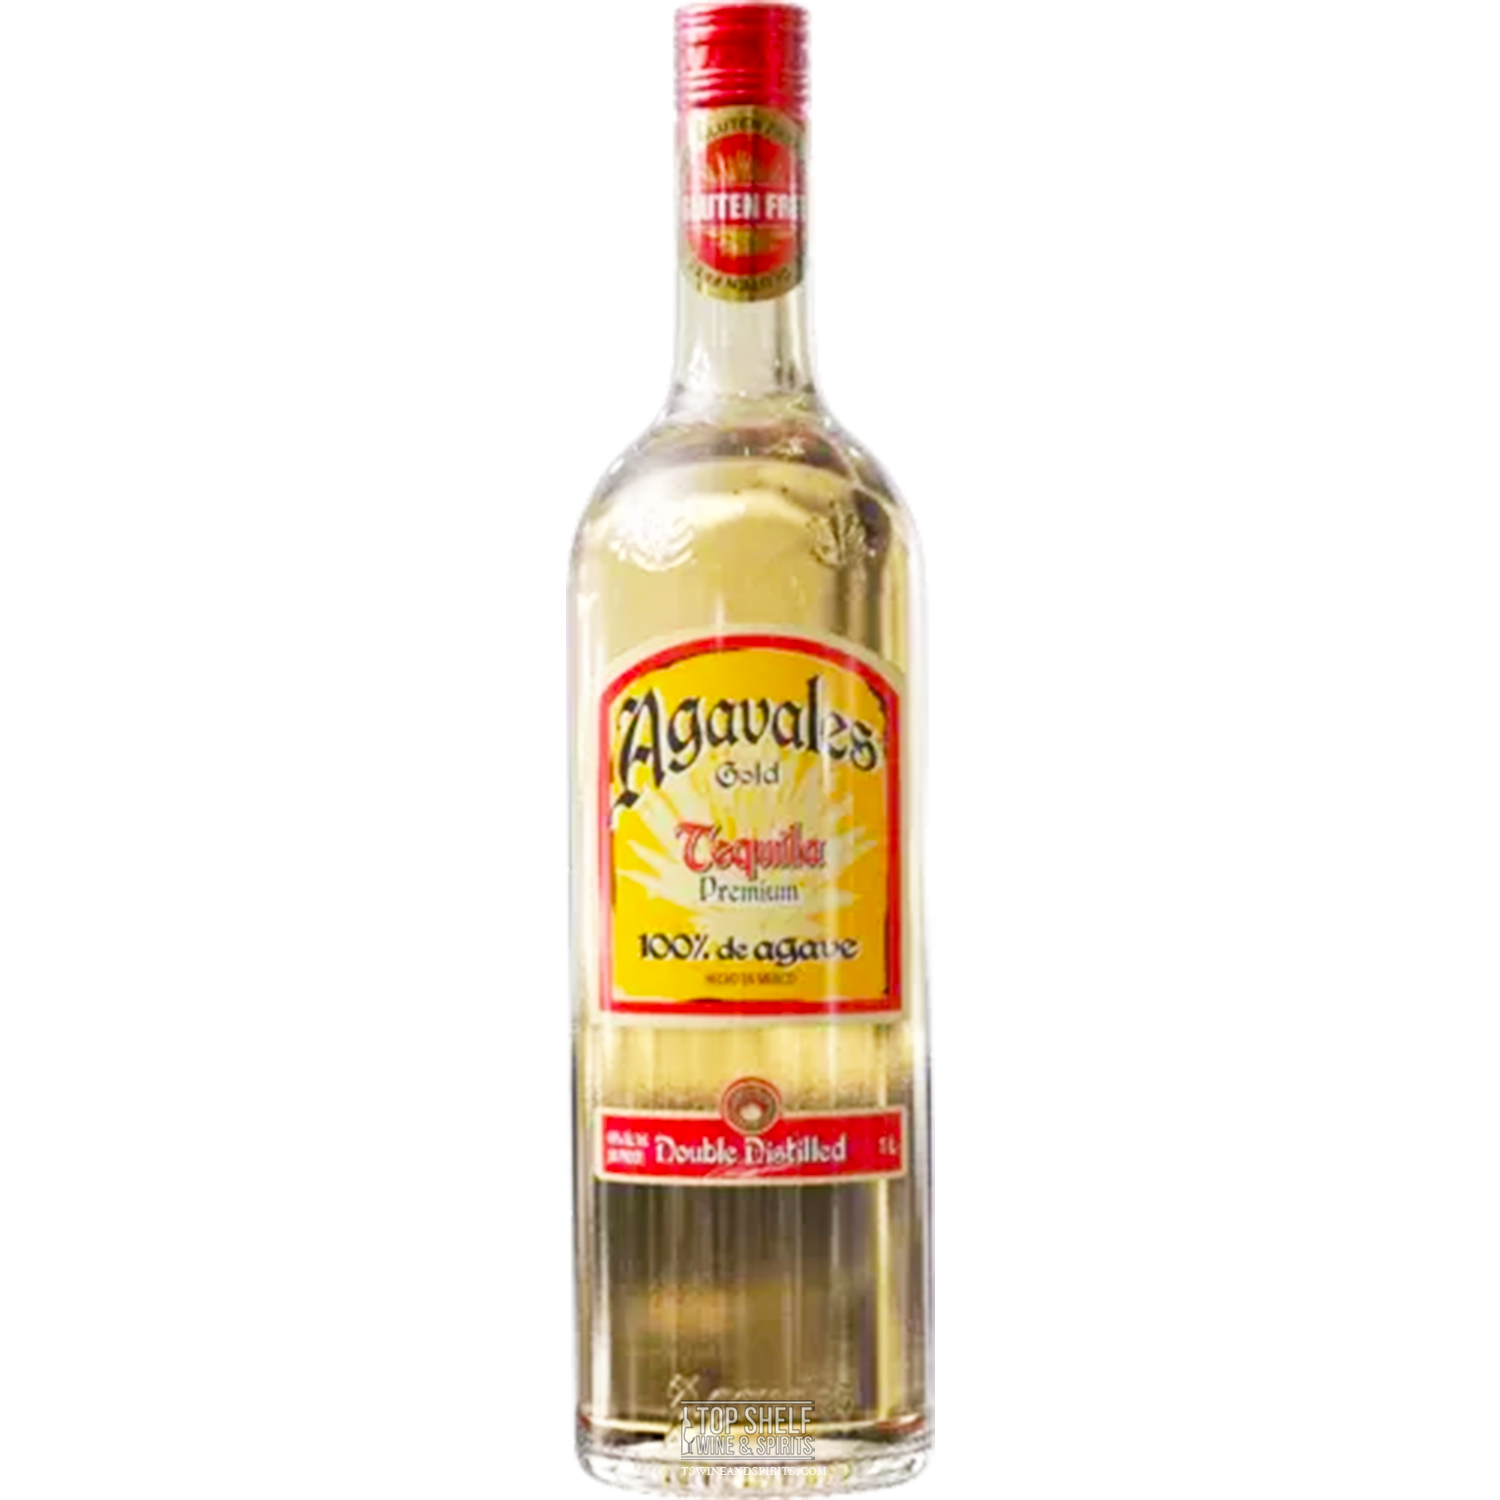 Agavales Original Gold Tequila